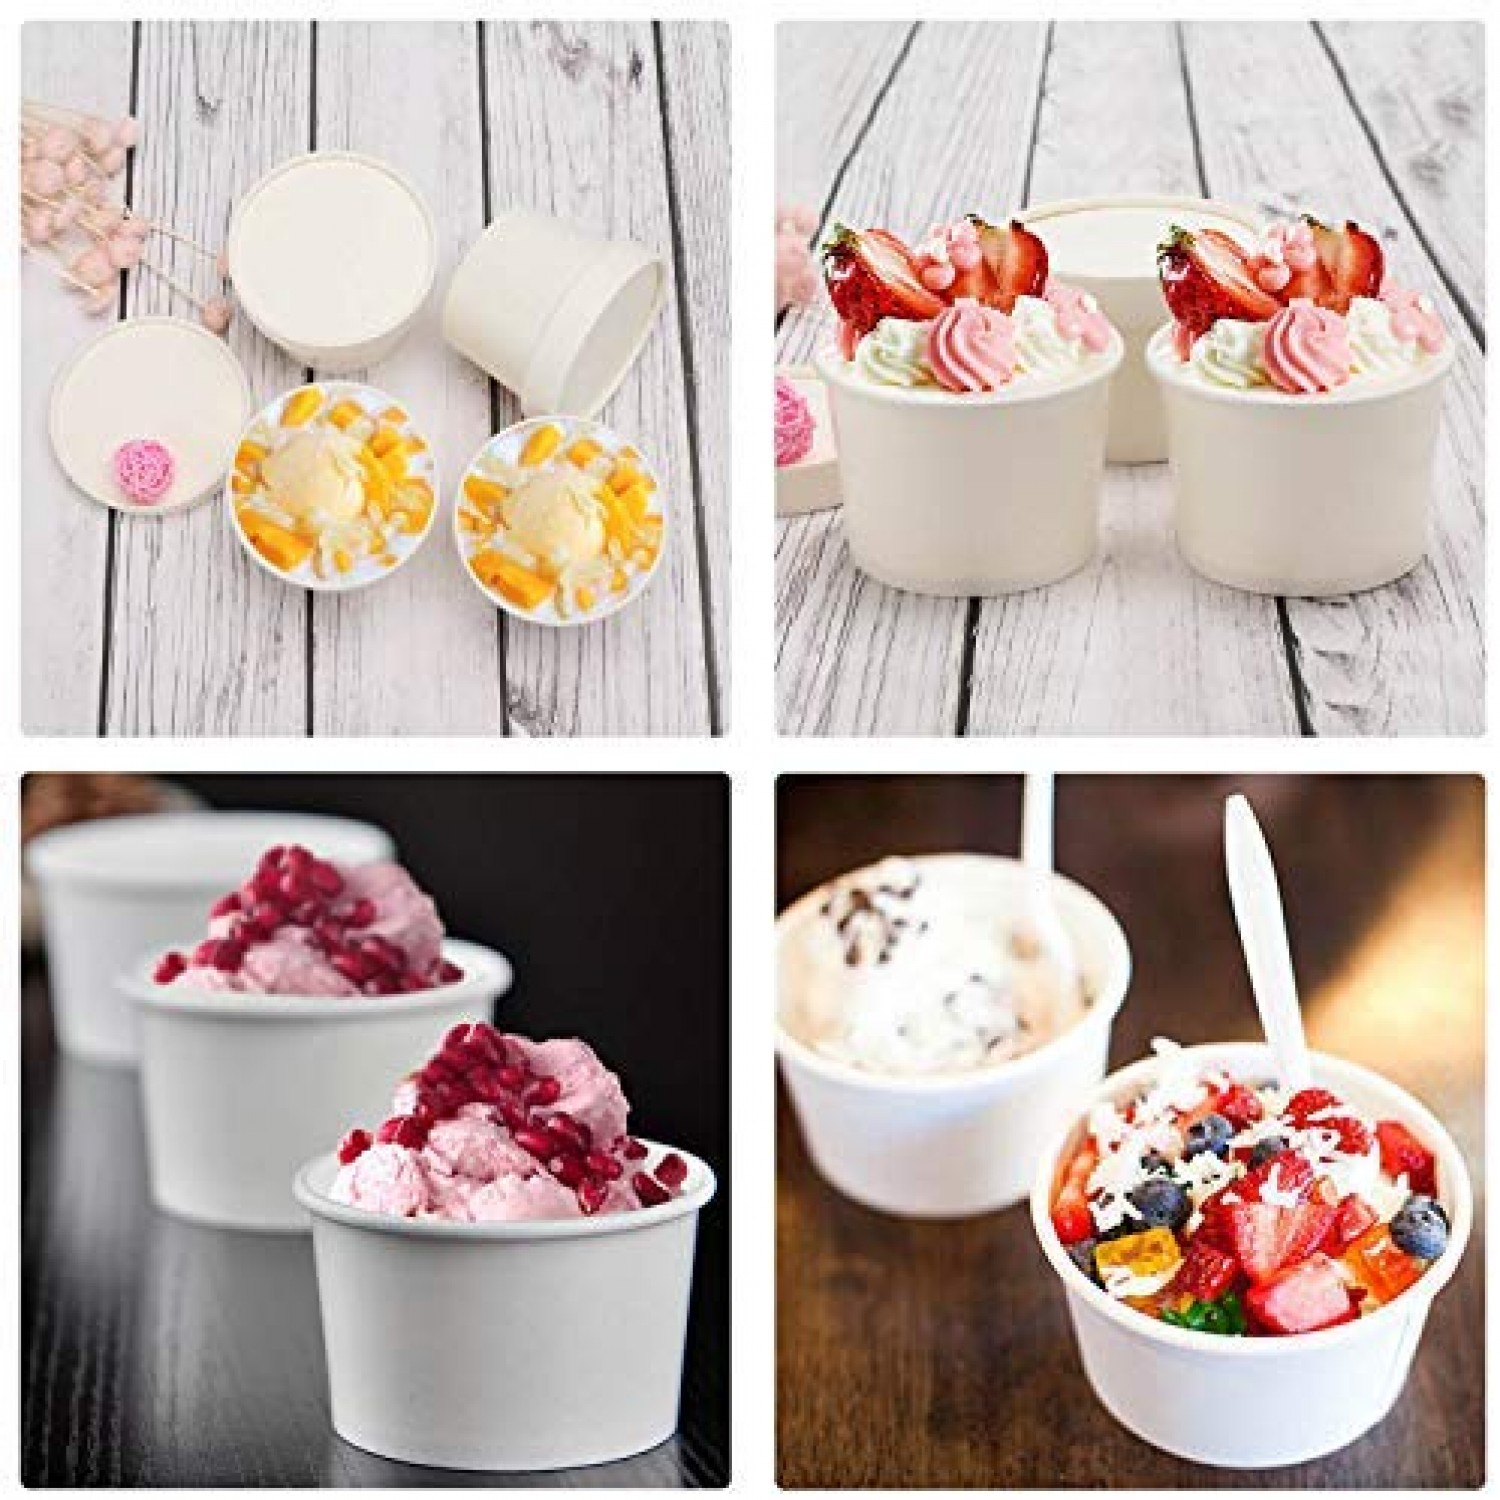 8oz Ice Cream Freezer Containers